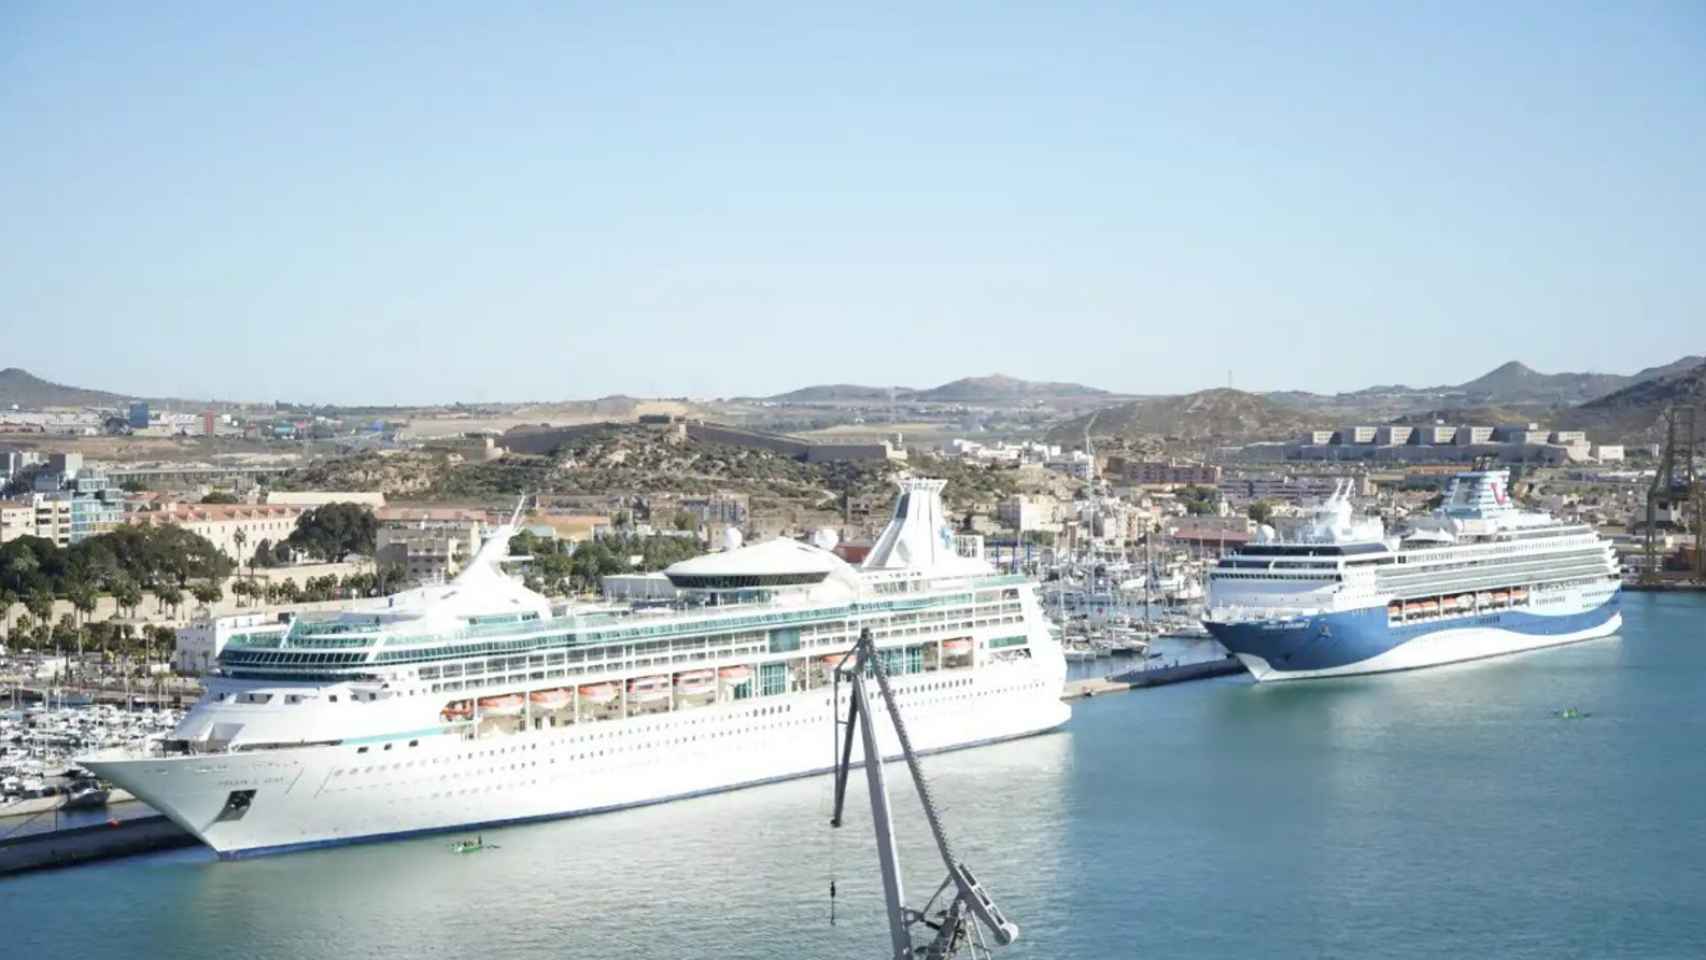 Dos impresionantes cruceros atracados en el puerto de Cartagena durante la pasada primavera.